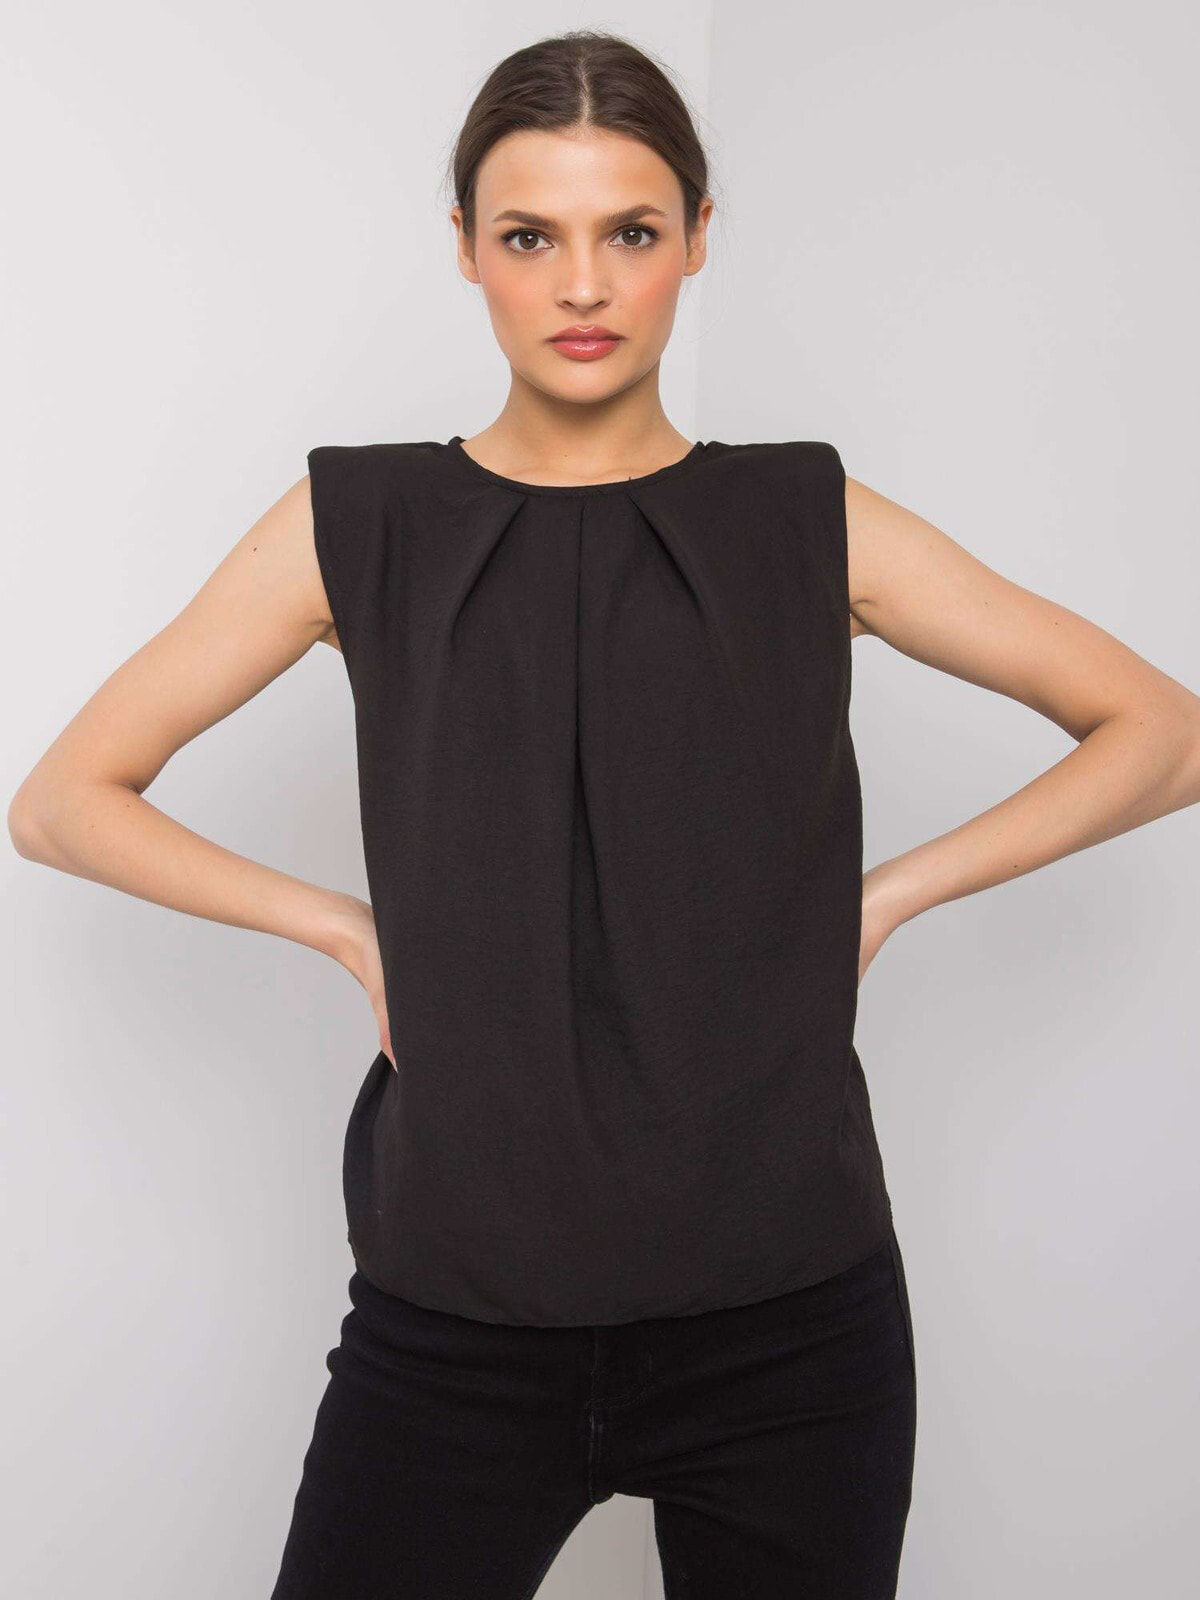 Женская блузка прямого кроя без рукавов черная Factory Price